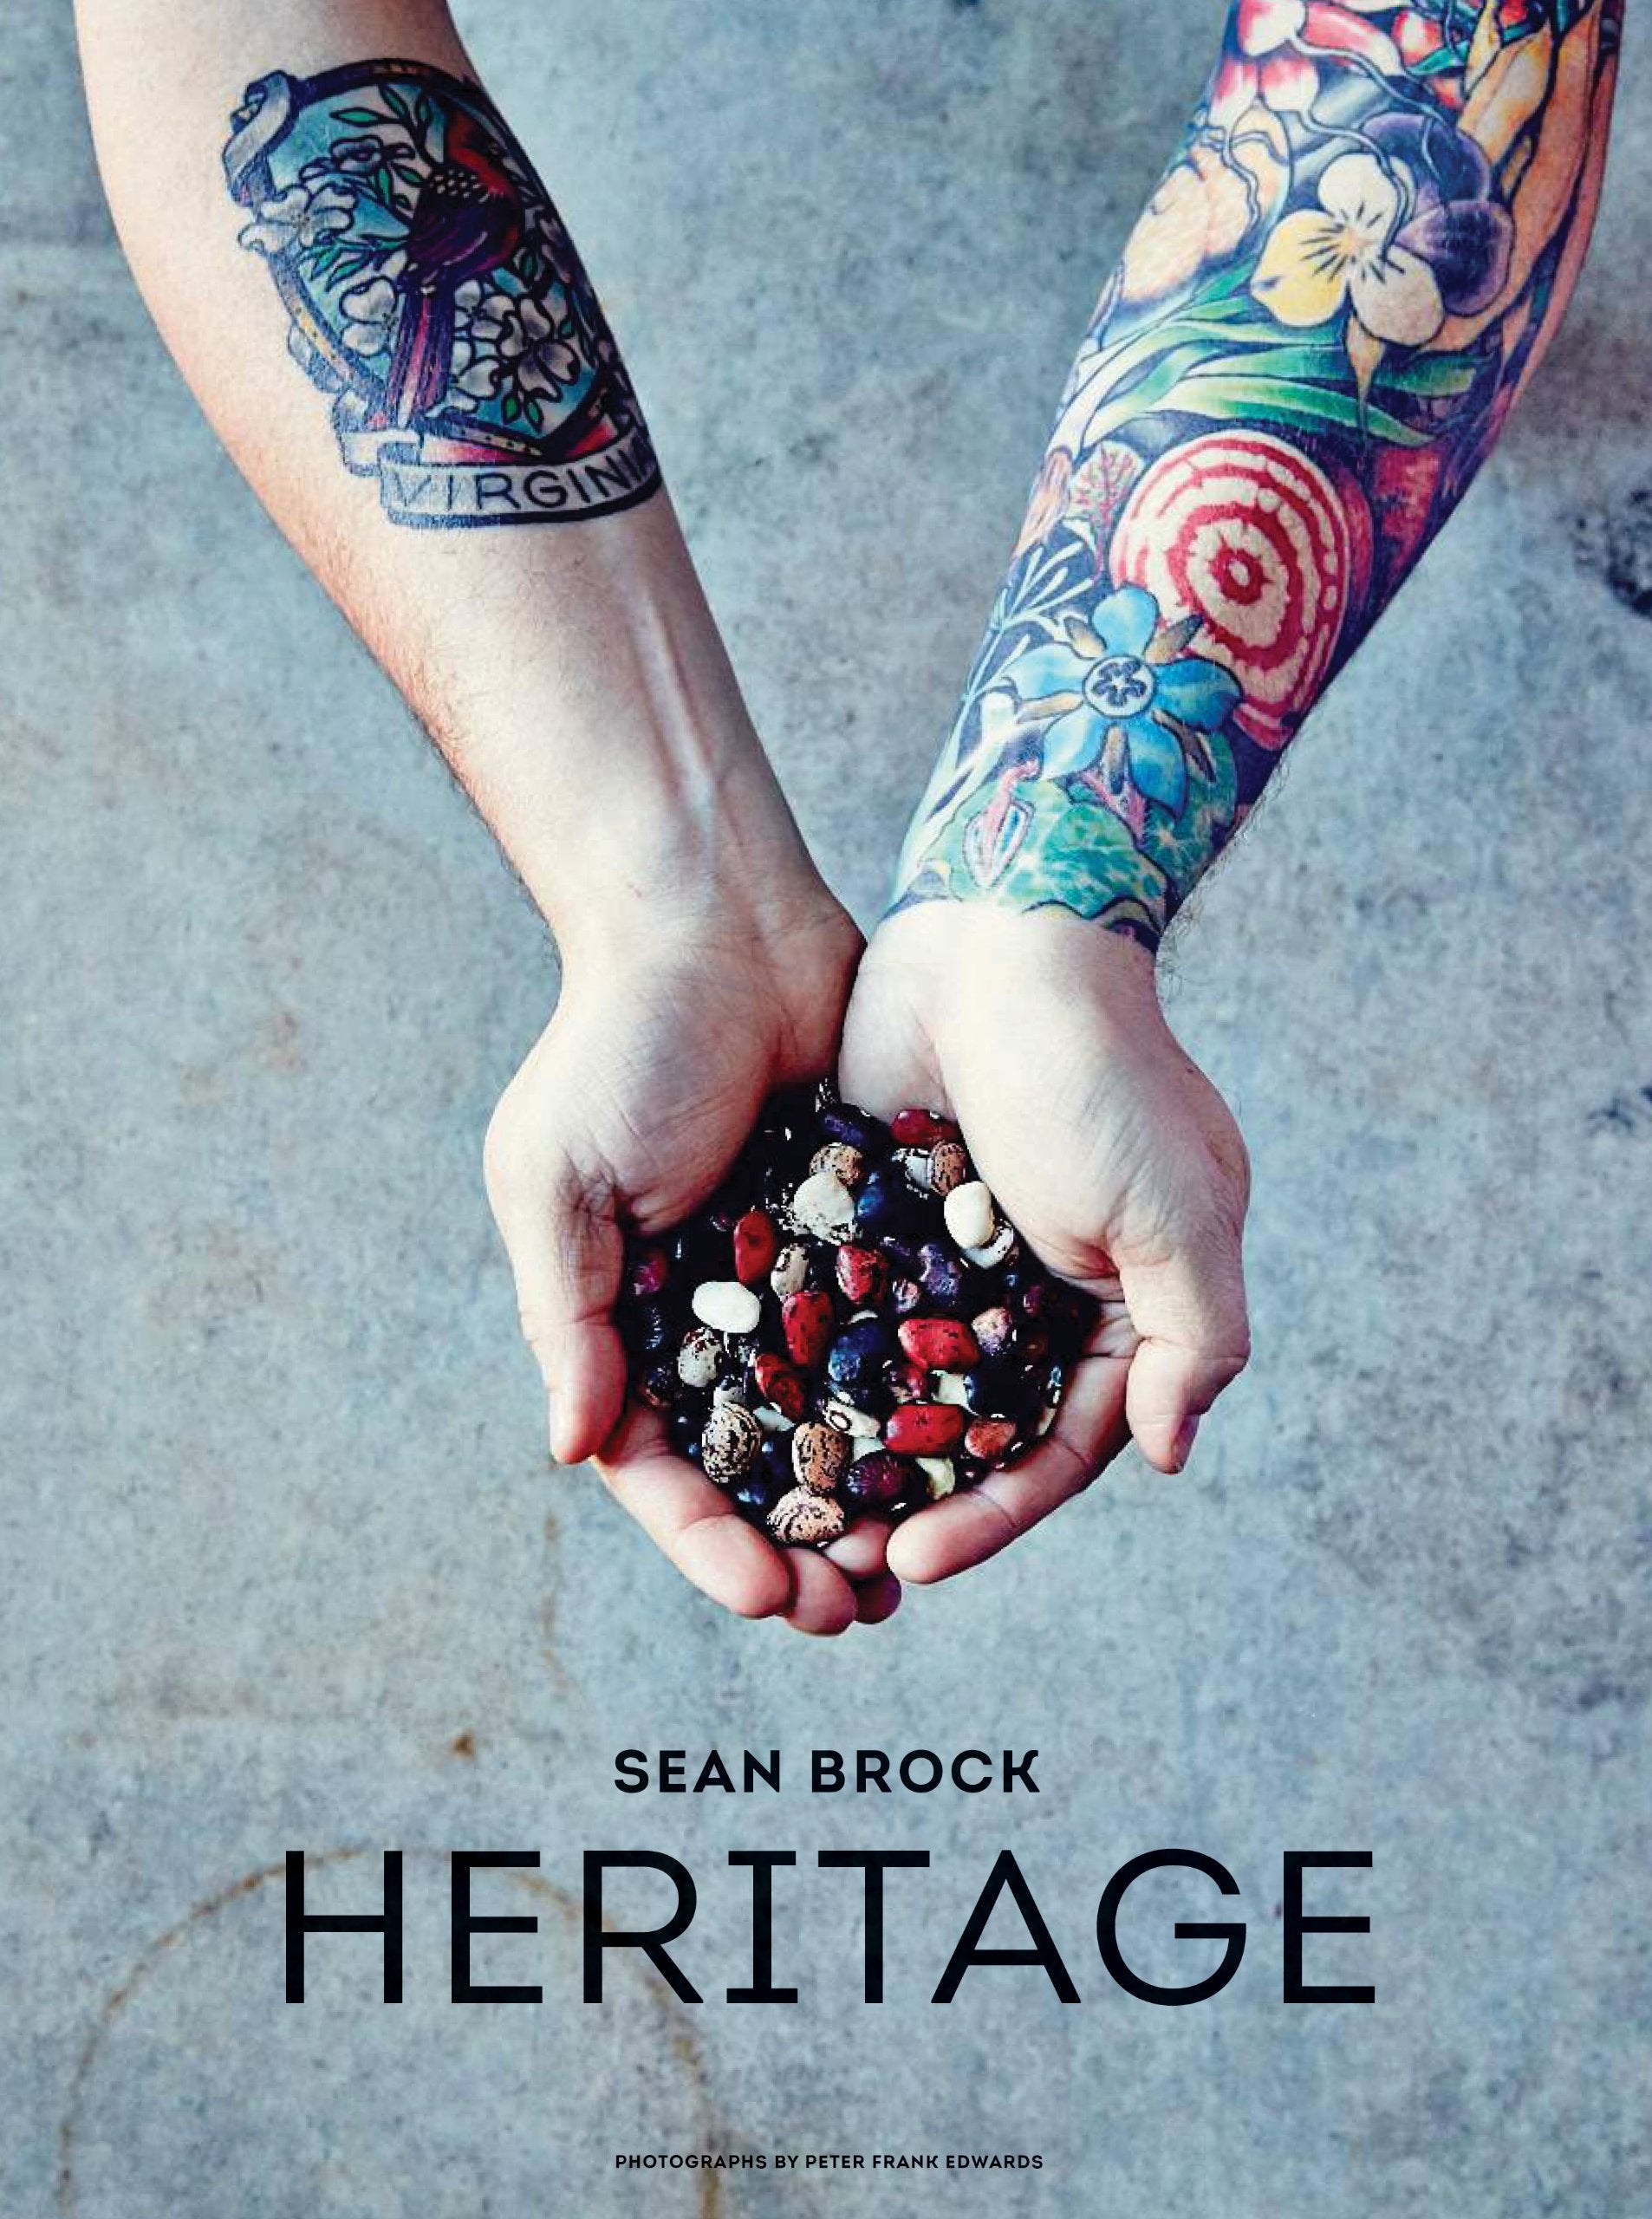 Heritage (Sean Brock)